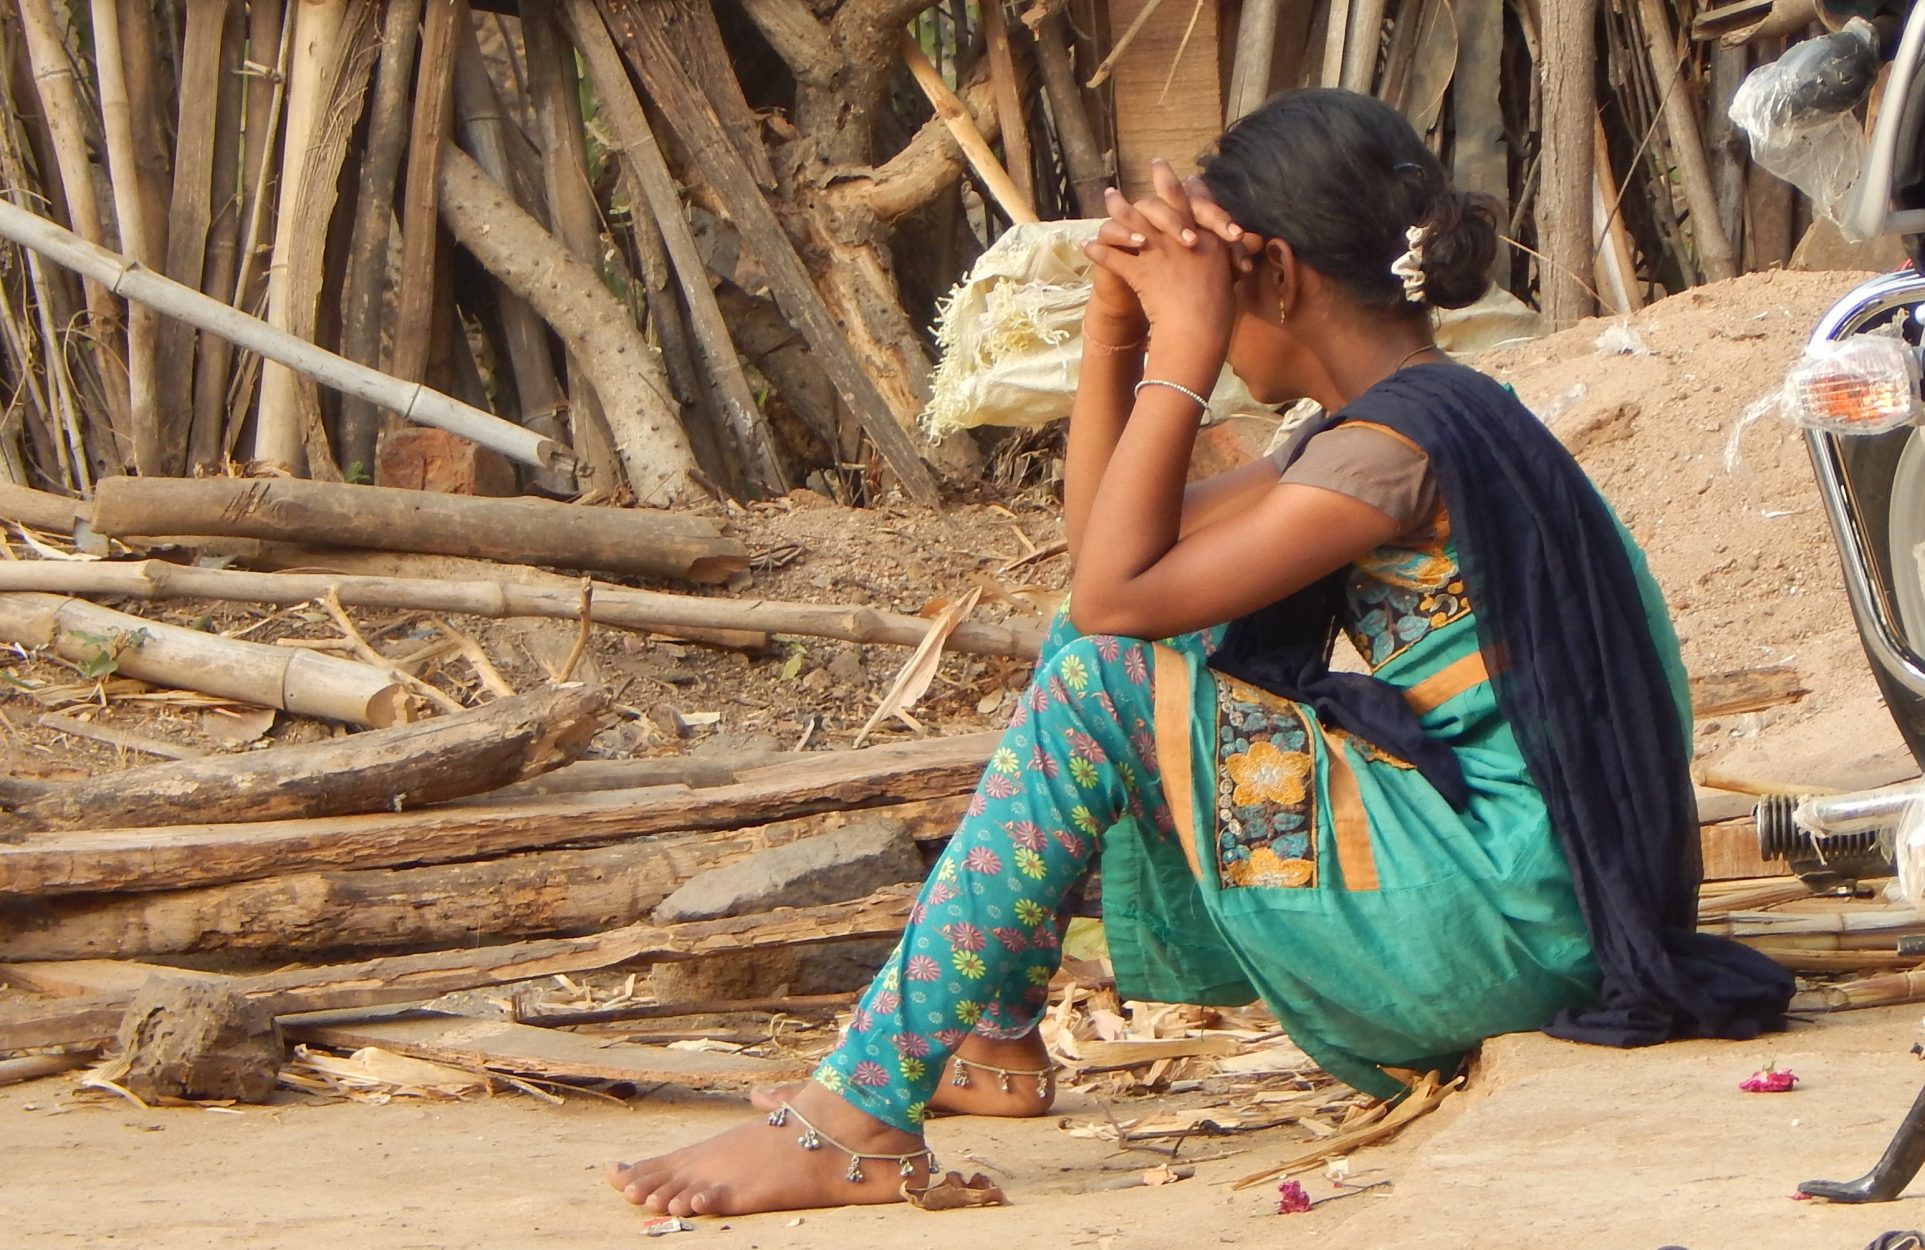 Ινδία: 16χρονη αναγκάστηκε να μείνει σε «καλύβα για την περίοδο» και πέθανε